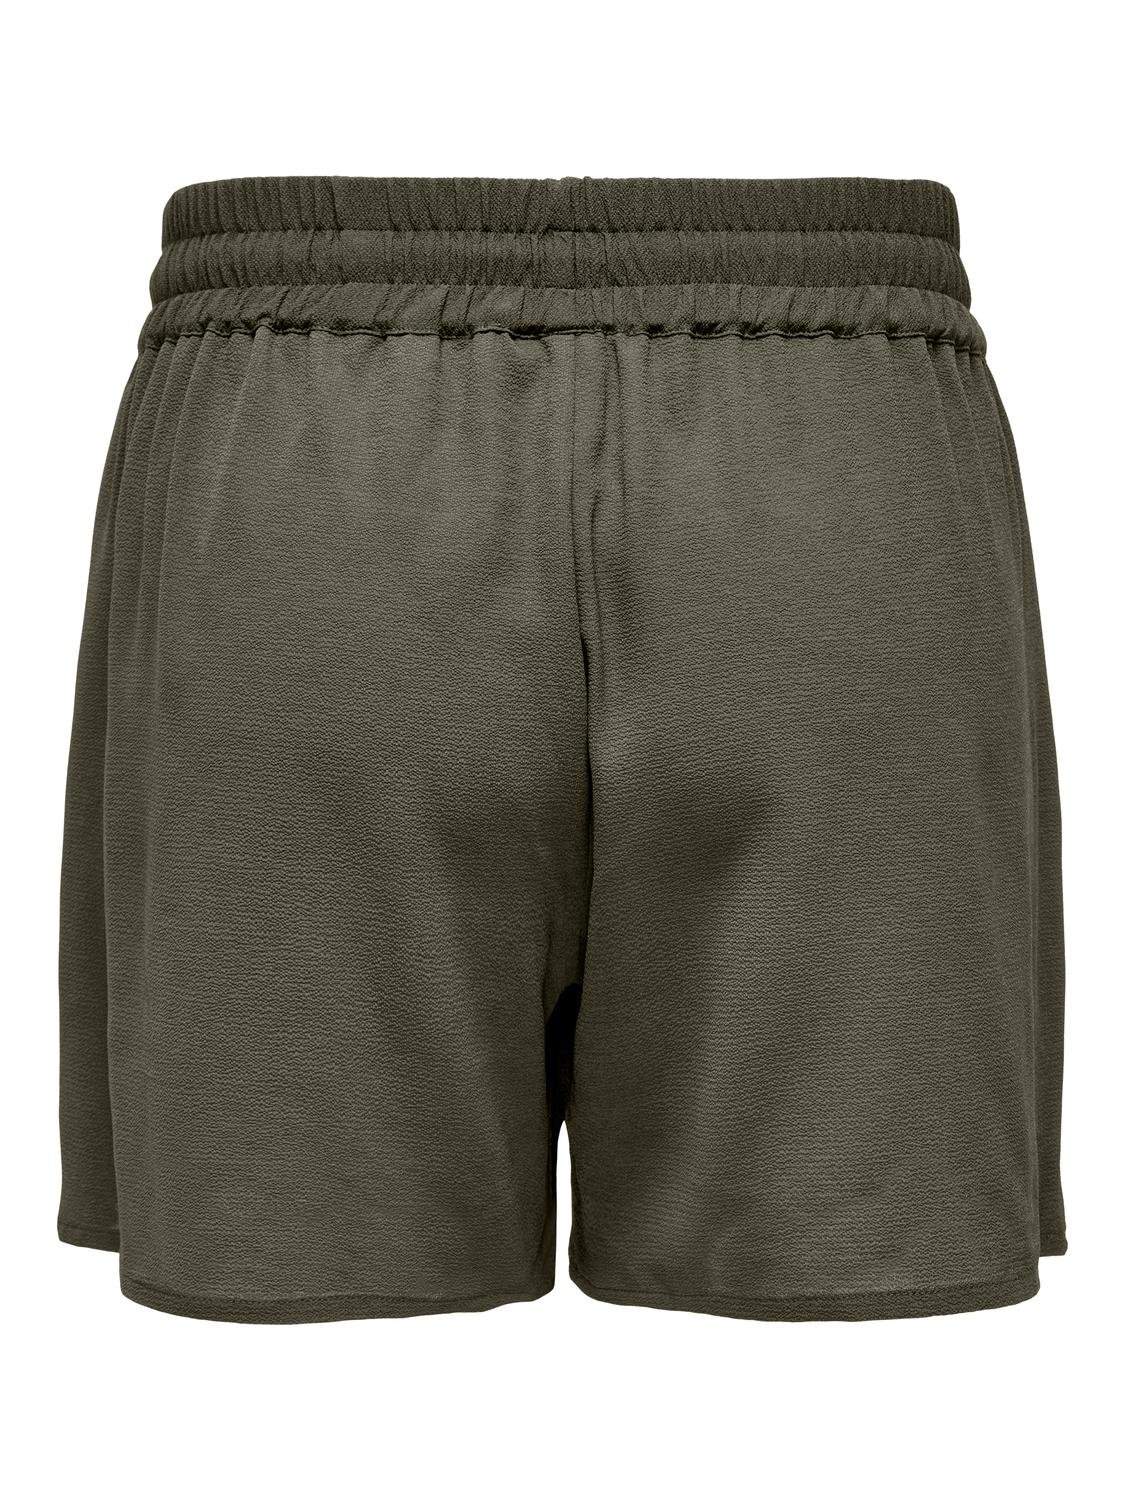 ONLY Normal passform Shorts -Kalamata - 15312230